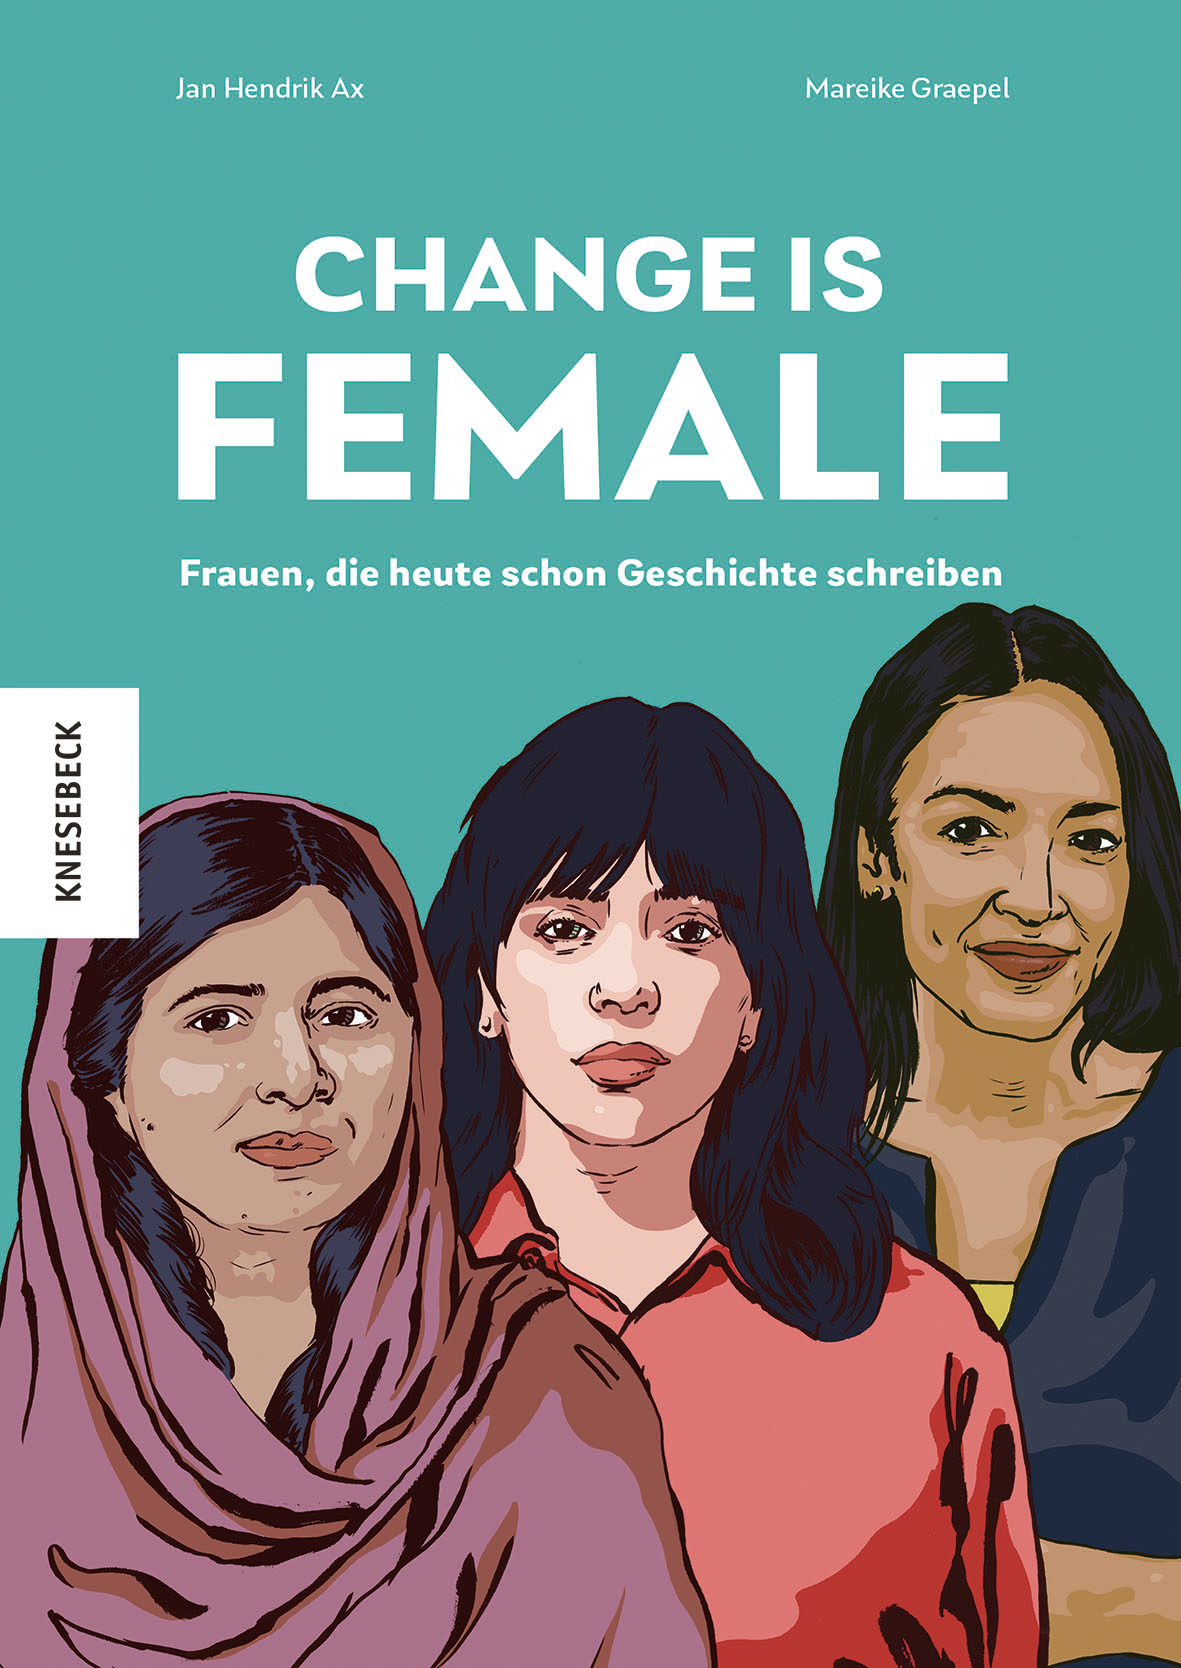 Change Is Female von Jan Hendrik Ax und  Mareike Graepel ist im Knesebeck-Verlag erschienen (©Knesebeck)